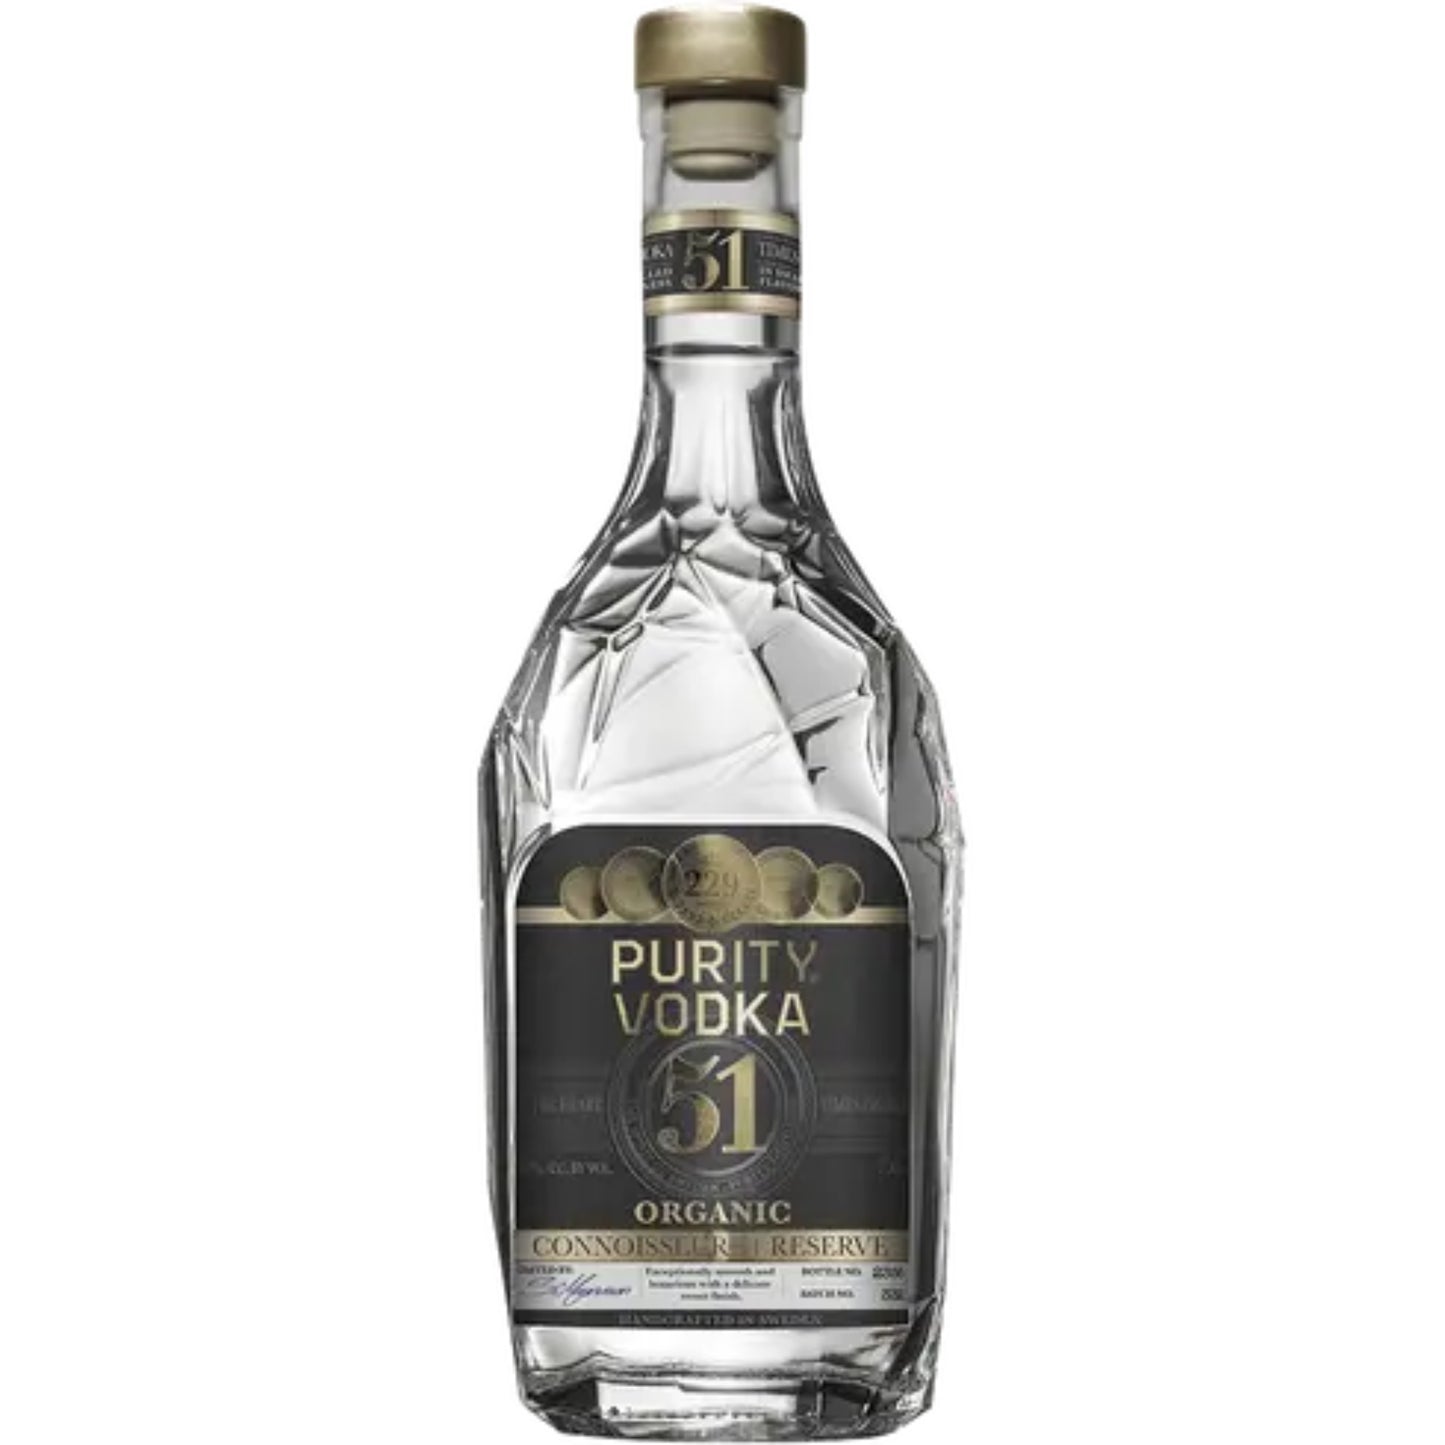 Purity Vodka Connoisseur 51 - Liquor Geeks